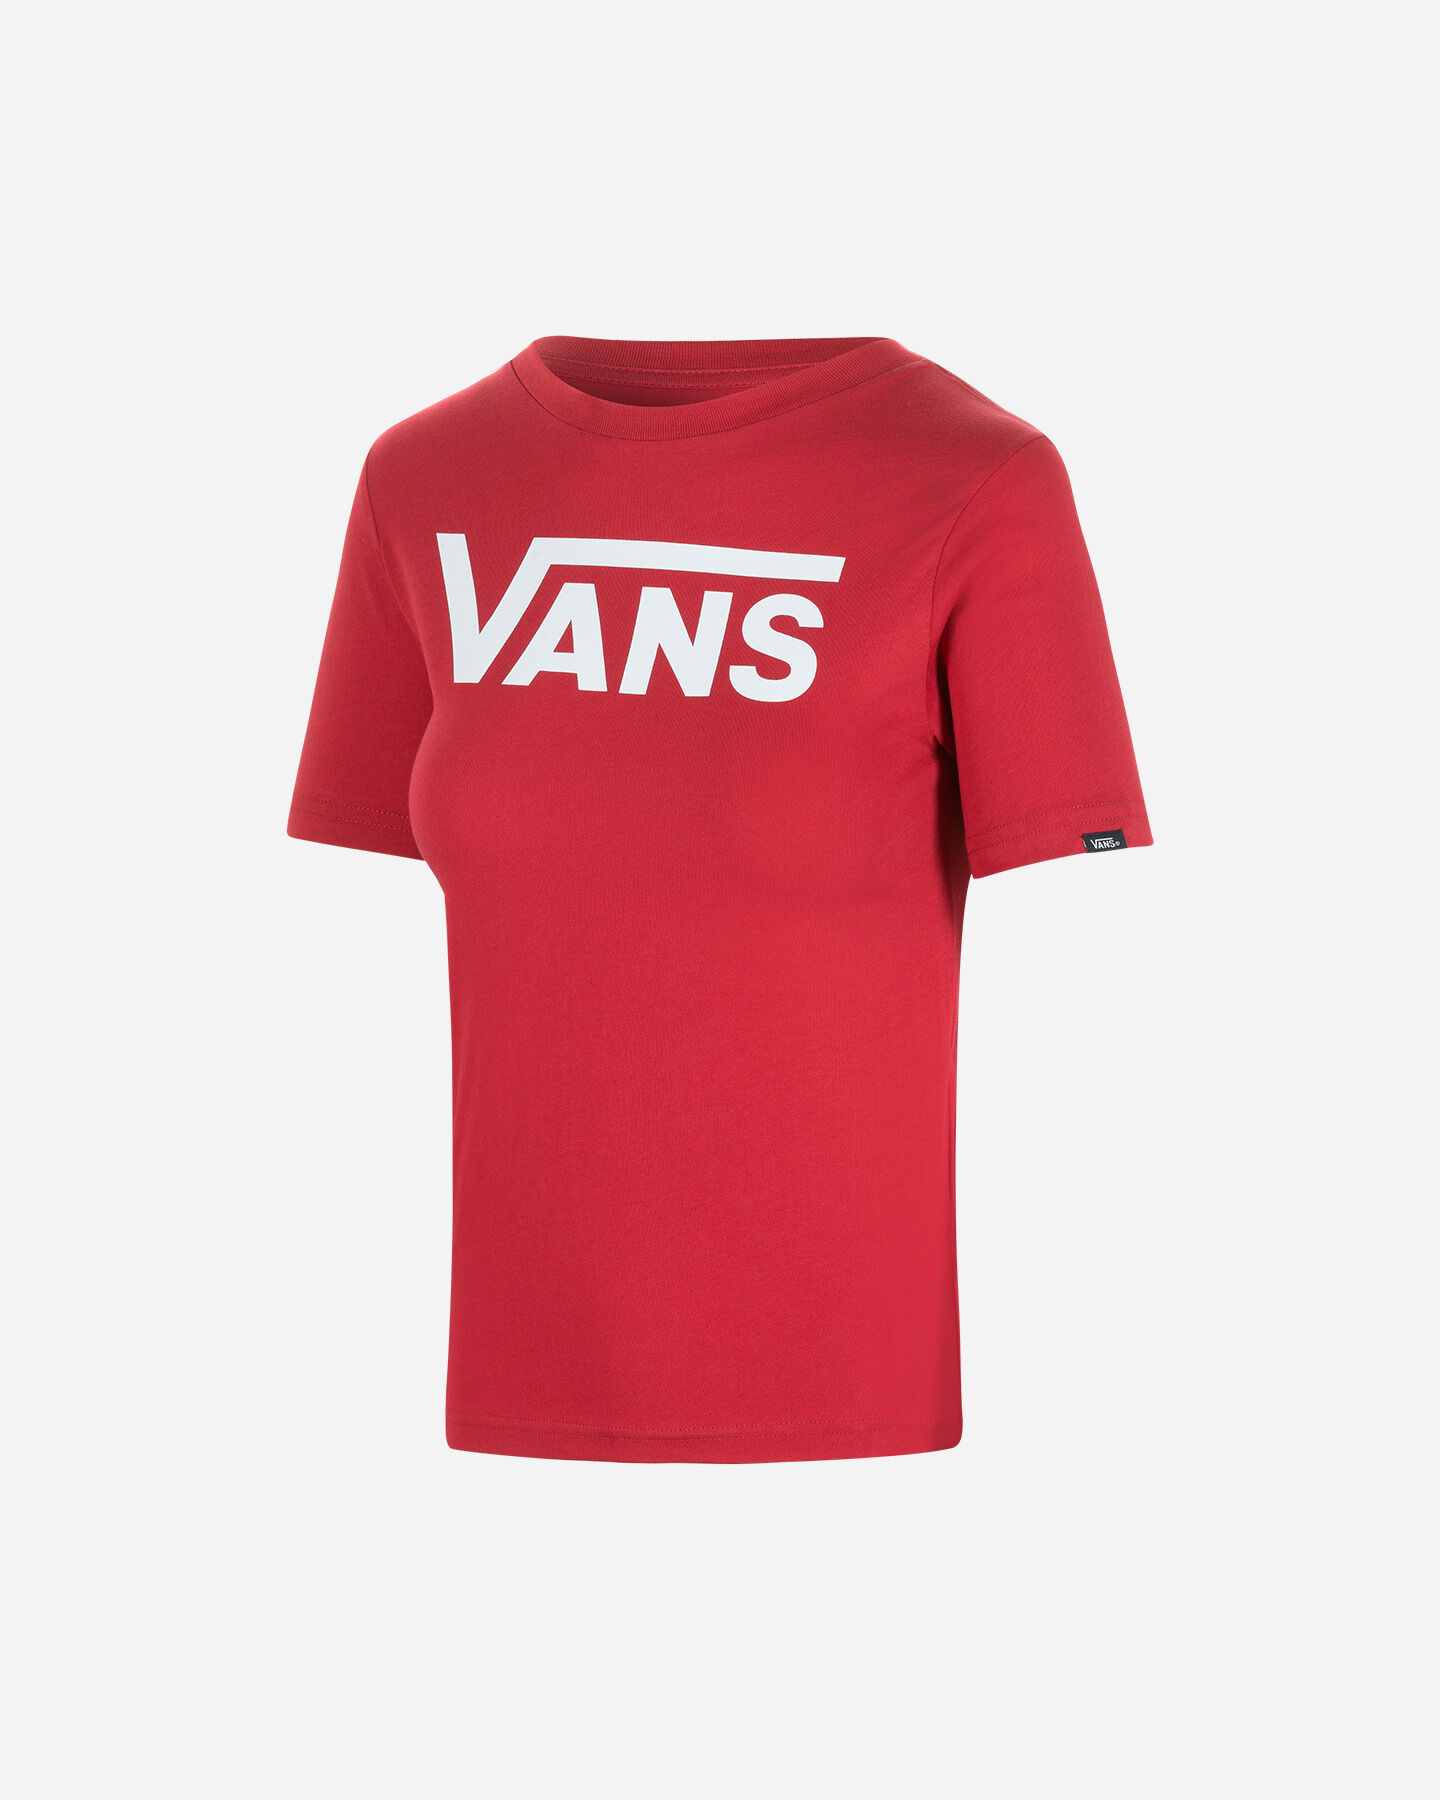  T-Shirt VANS CLASSIC LOGO JR S5245513|4LP|S scatto 0